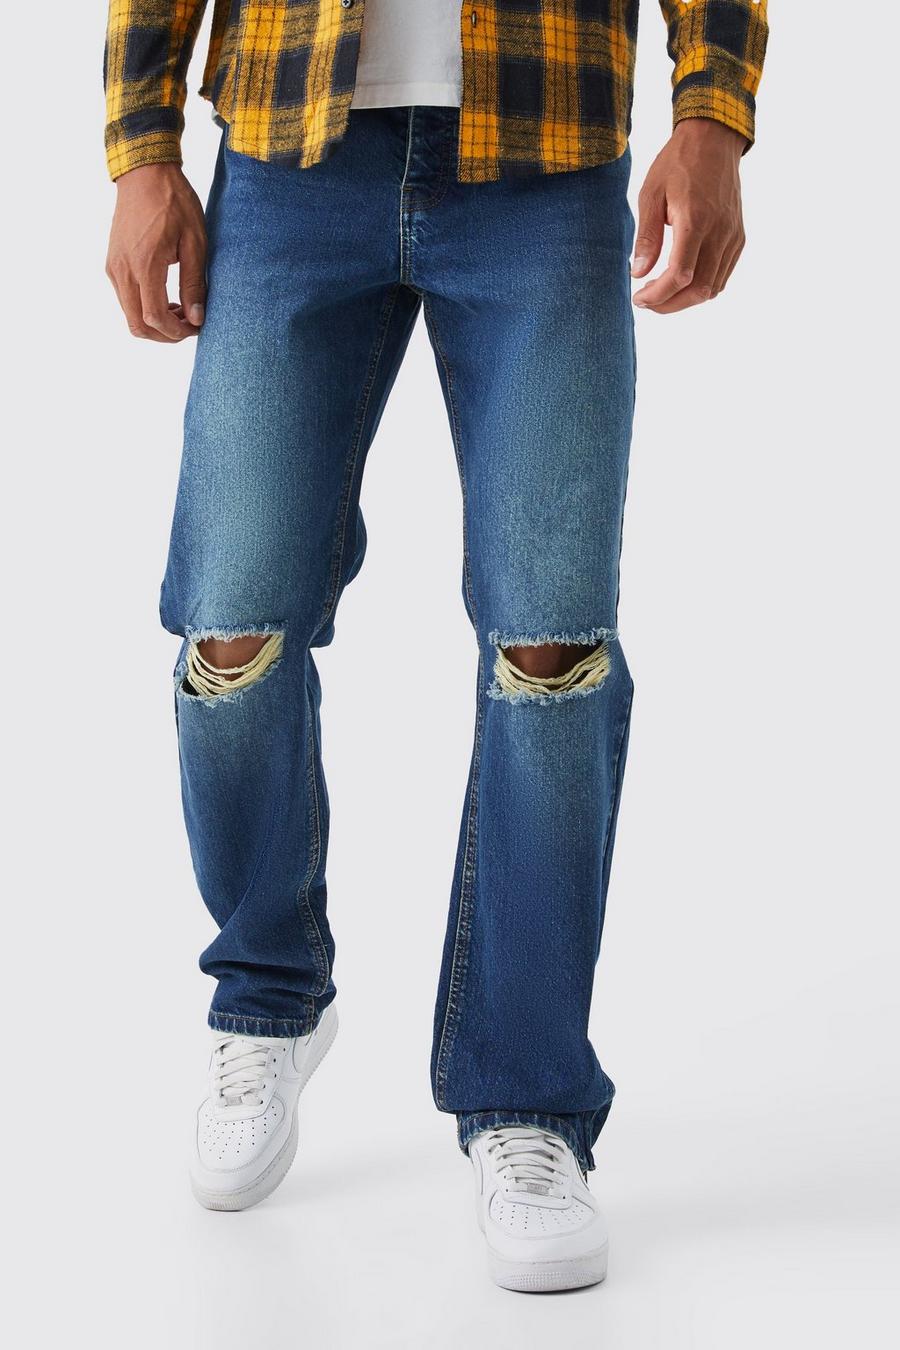 Jeans Tall rilassati in denim rigido con zip sul fondo, Antique blue